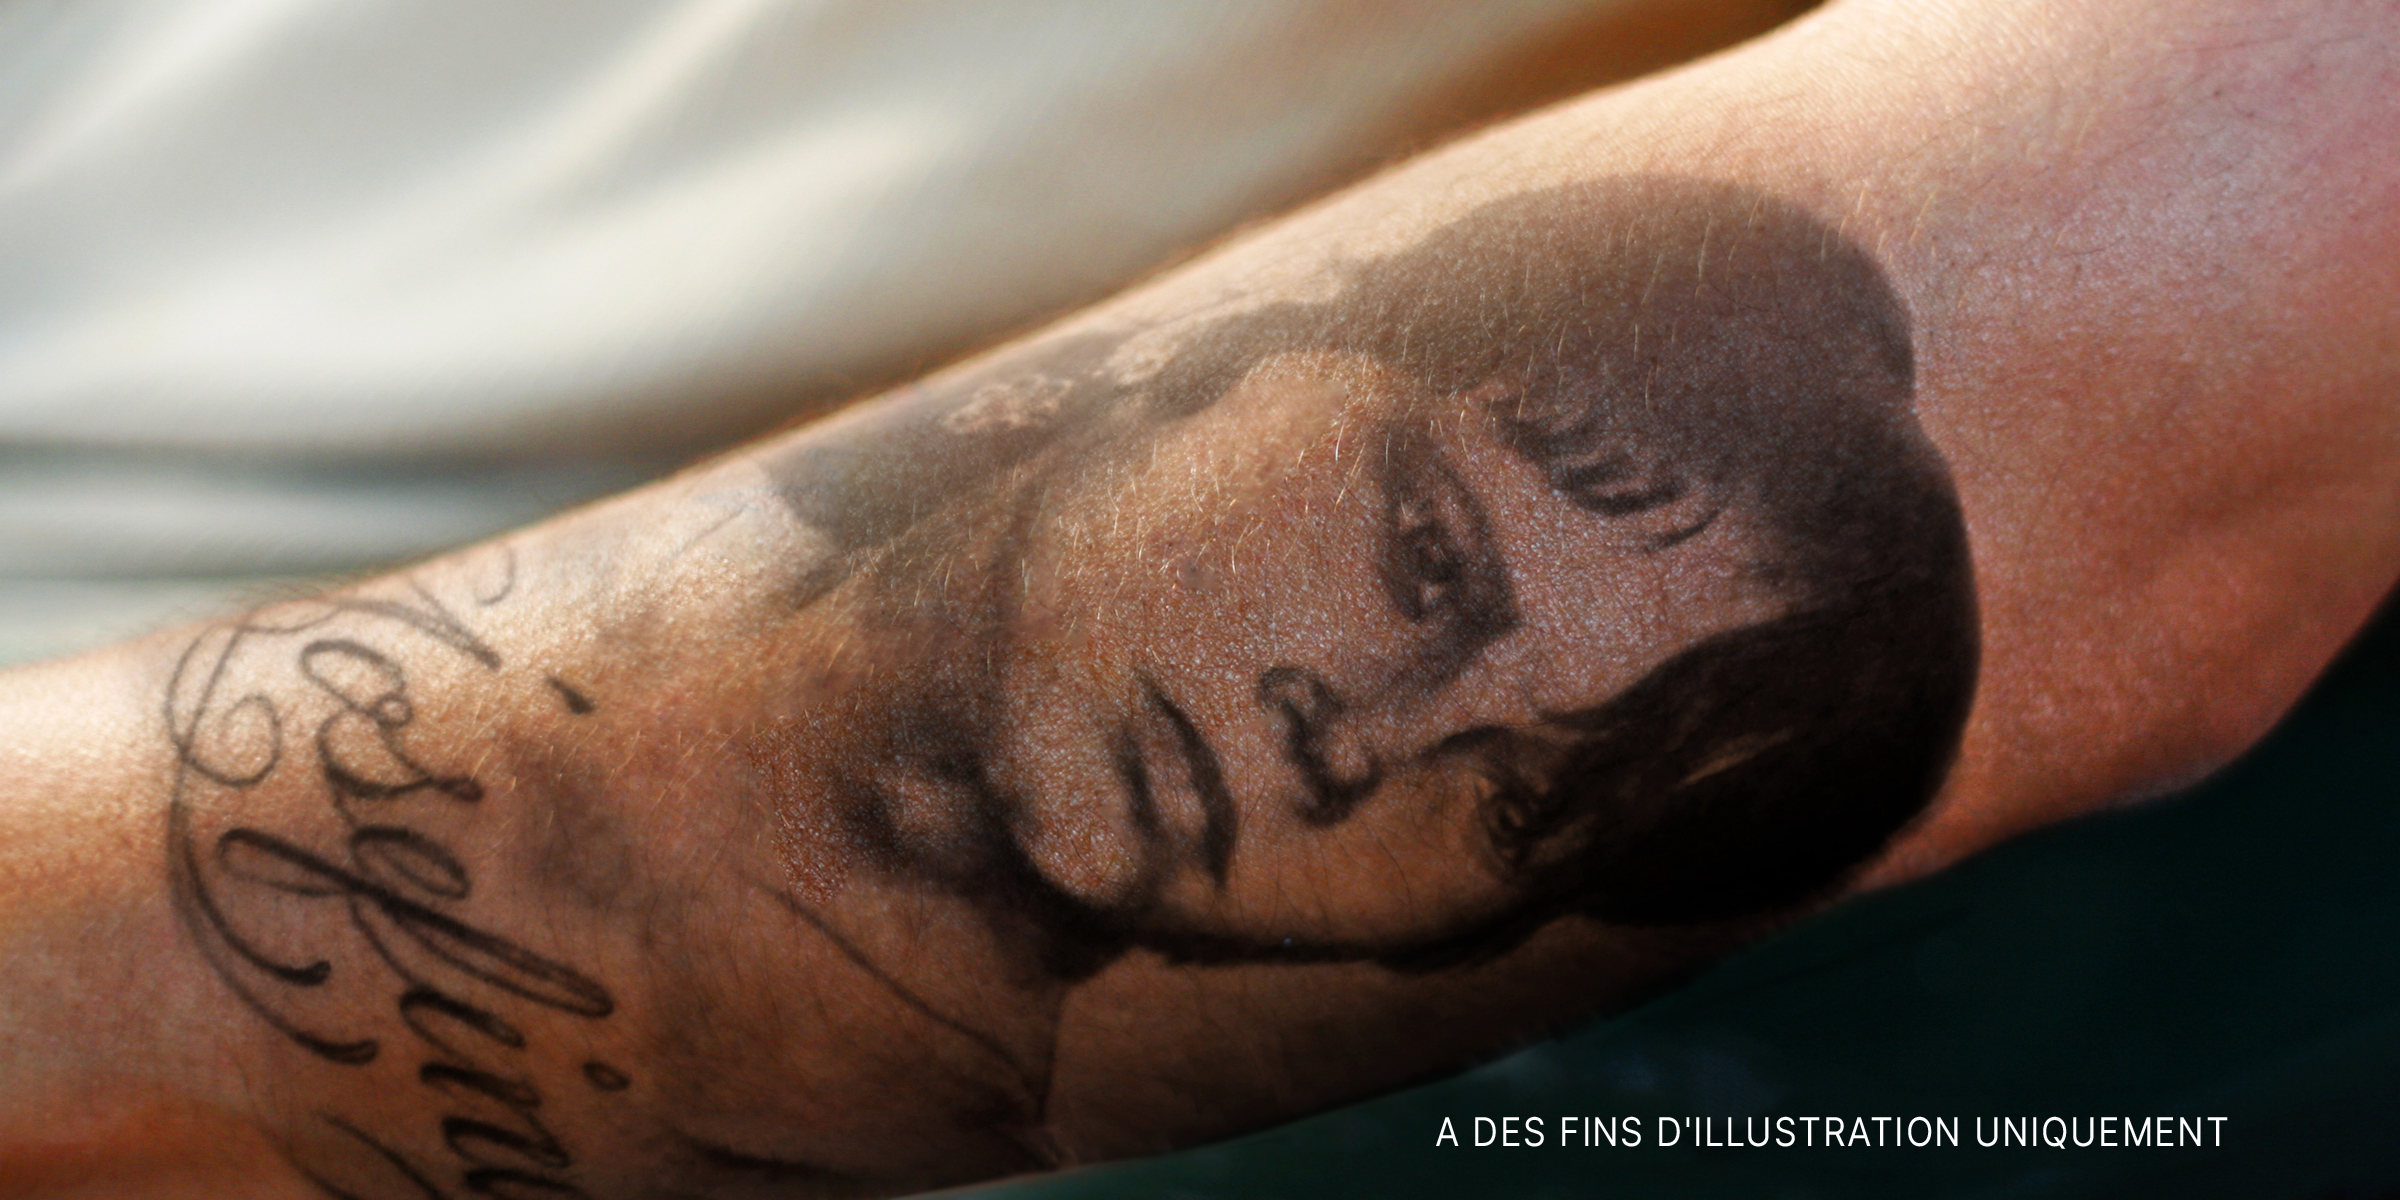 Le visage d'une fille tatoué sur le bras d'un homme. | Source : Flickr / mytat_2s (CC BY 2.0) | Flickr / Maryanne Ventrice (CC BY 2.0)